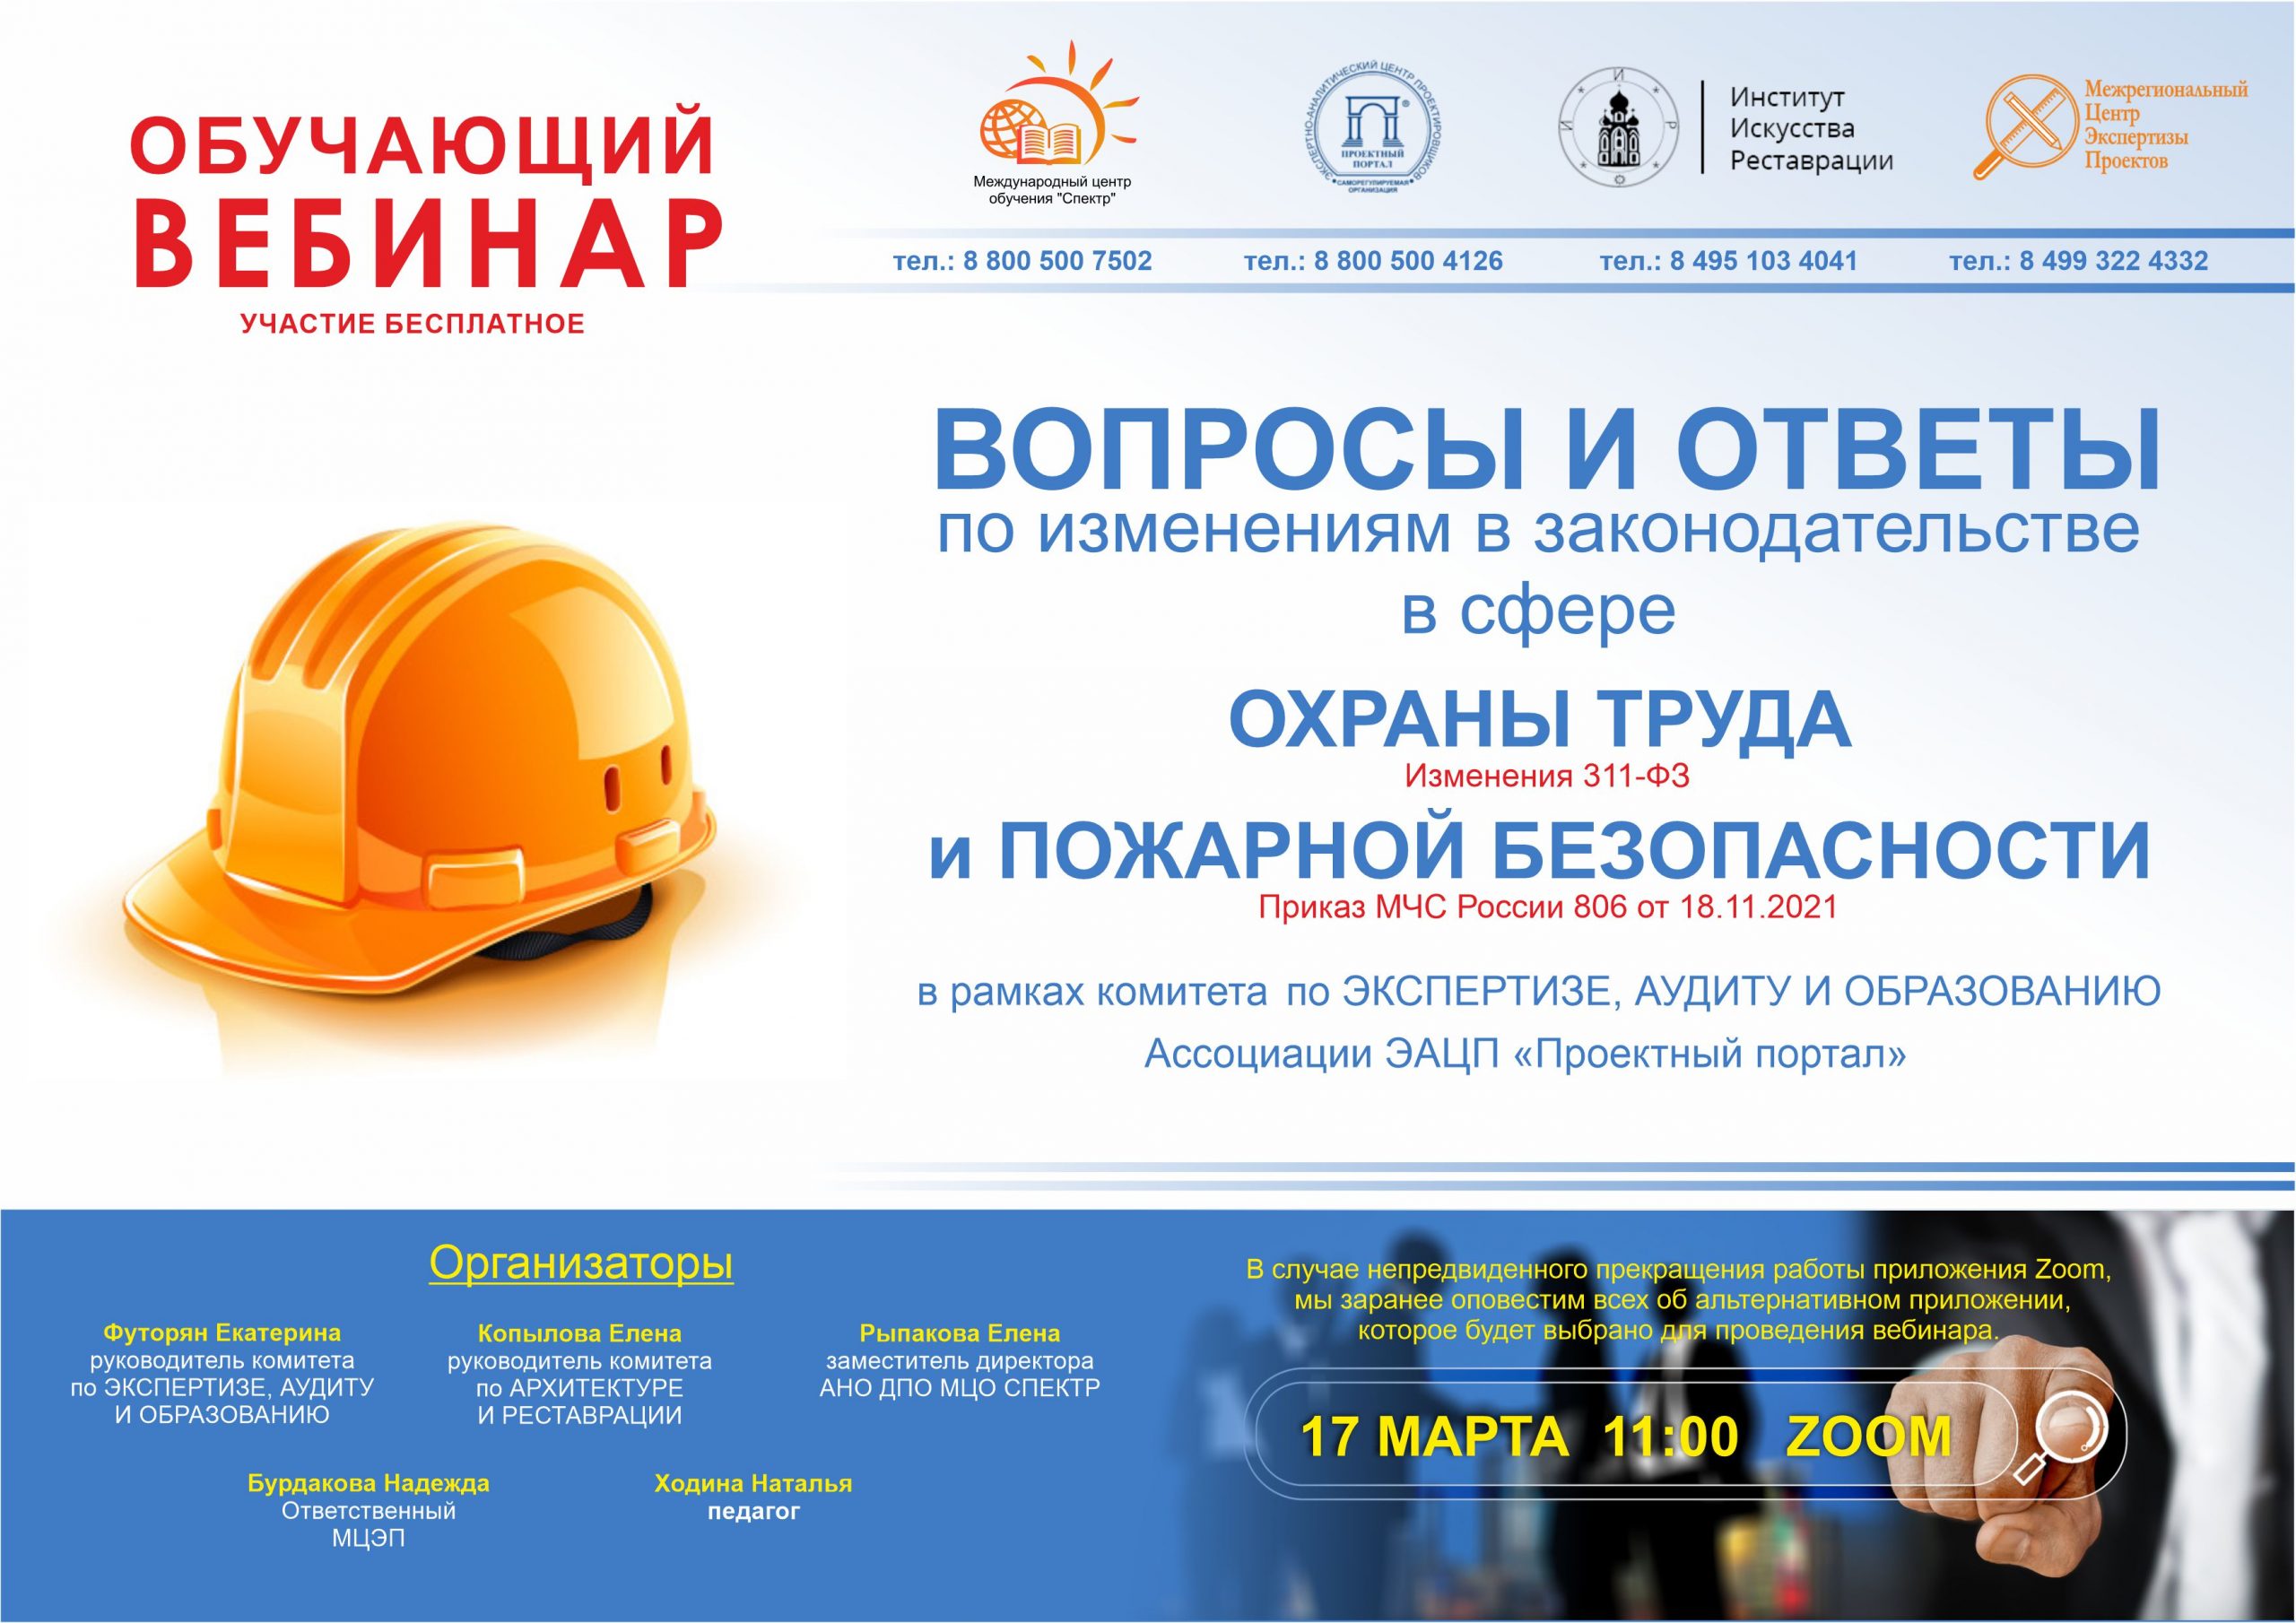 17 марта состоится вебинар “Вопросы и ответы по изменениям в законодательстве в сфере охраны труда и пожарной безопасности”